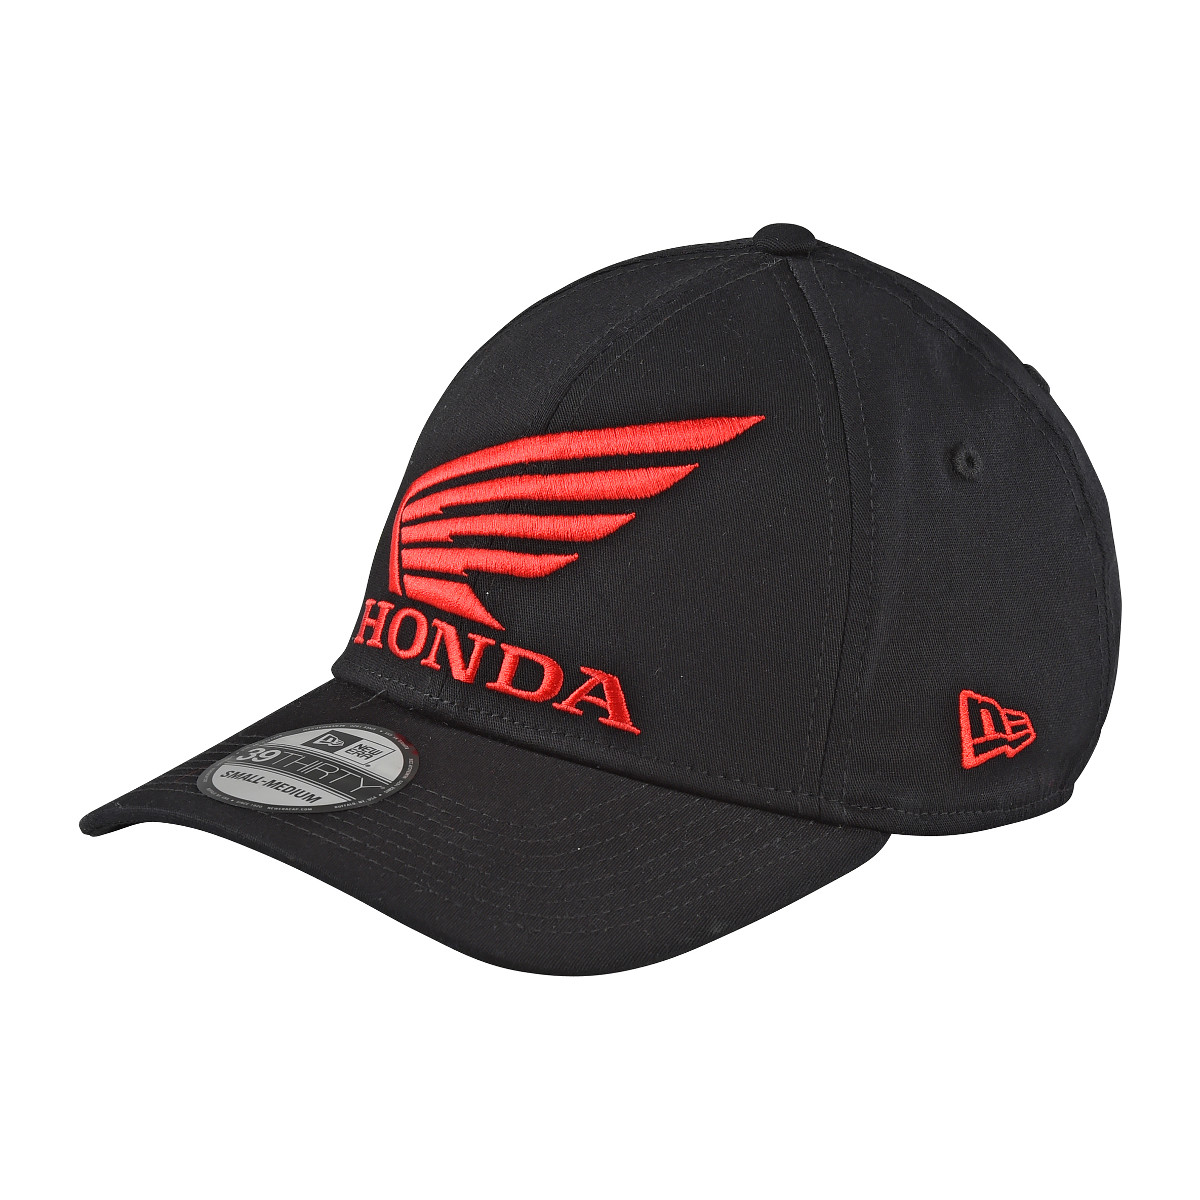 Troy Lee Designs Cap Honda Wing Black